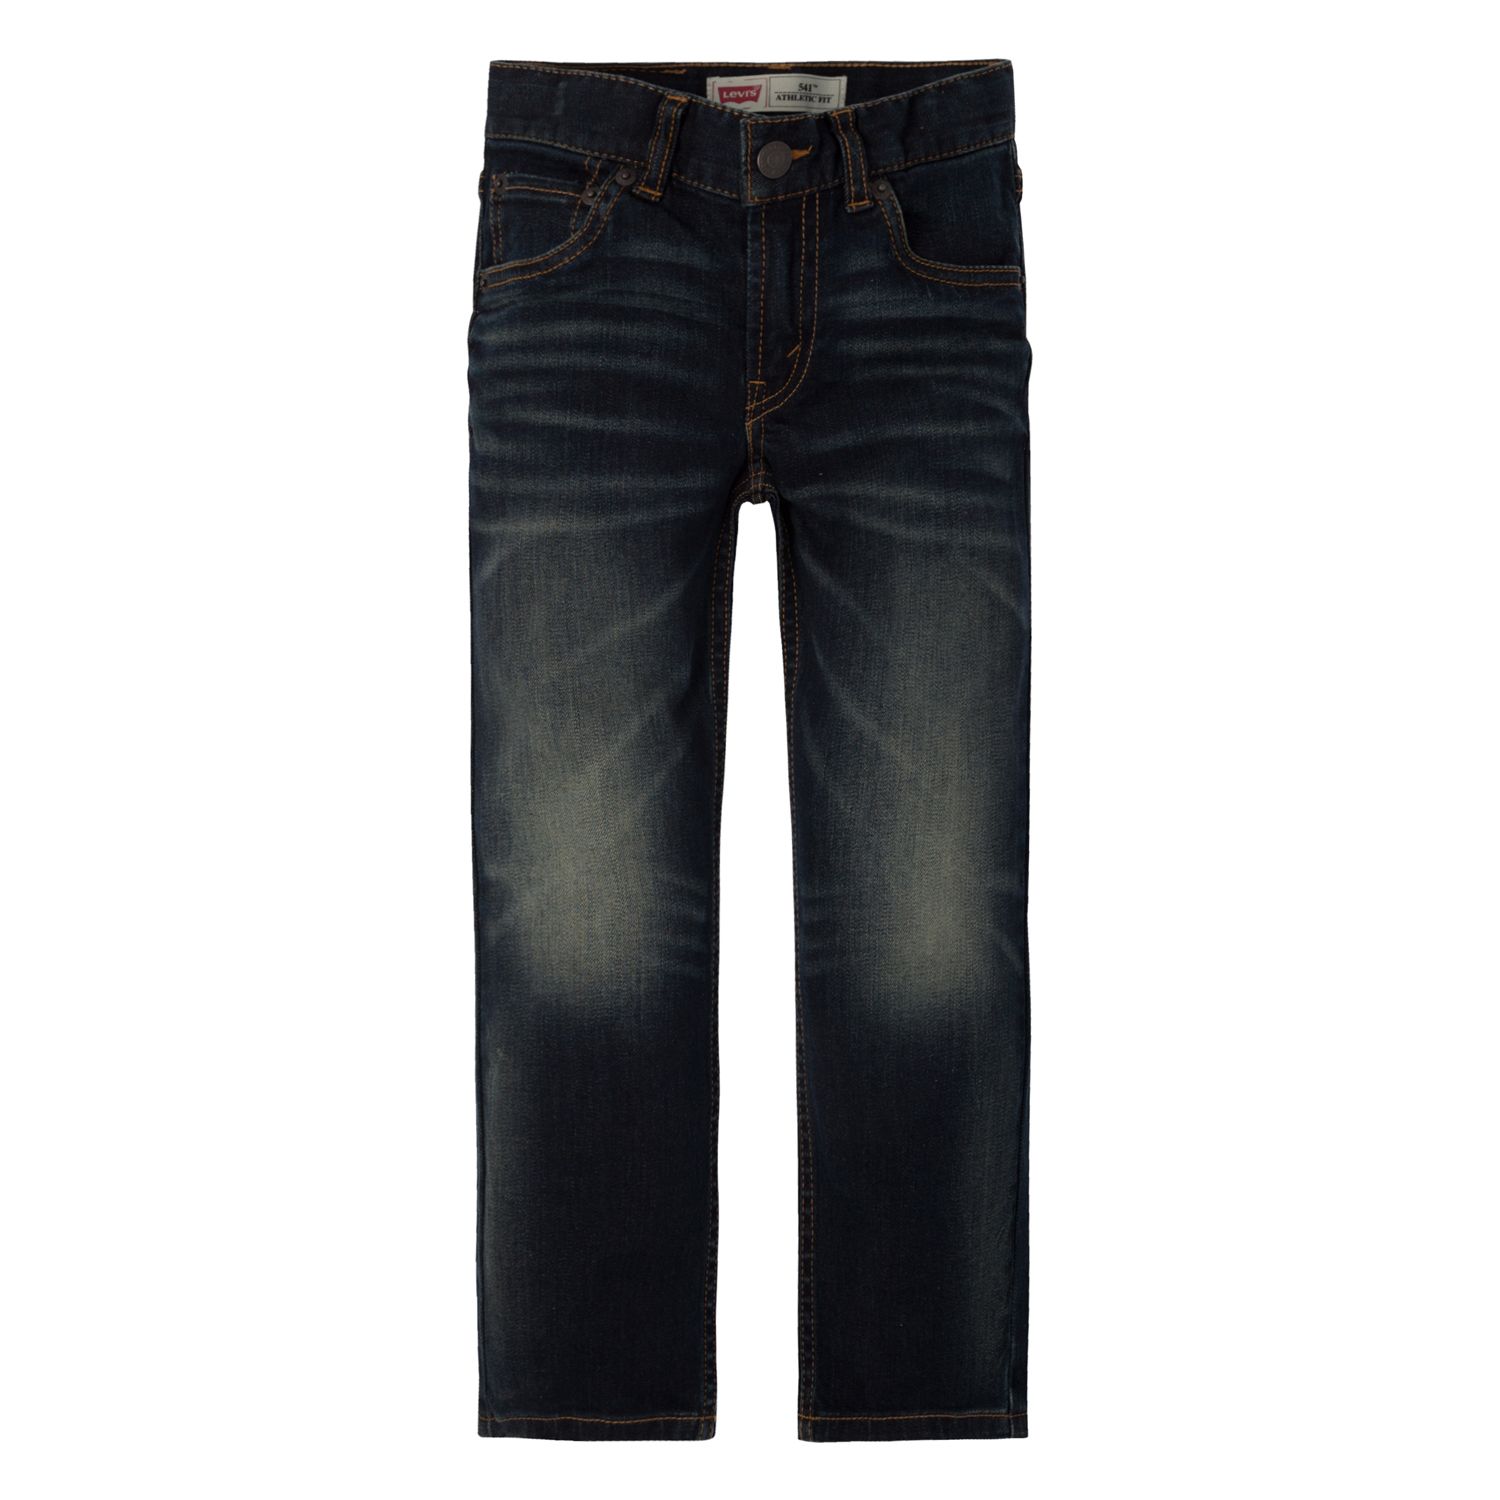 levis 541 jeans kohls